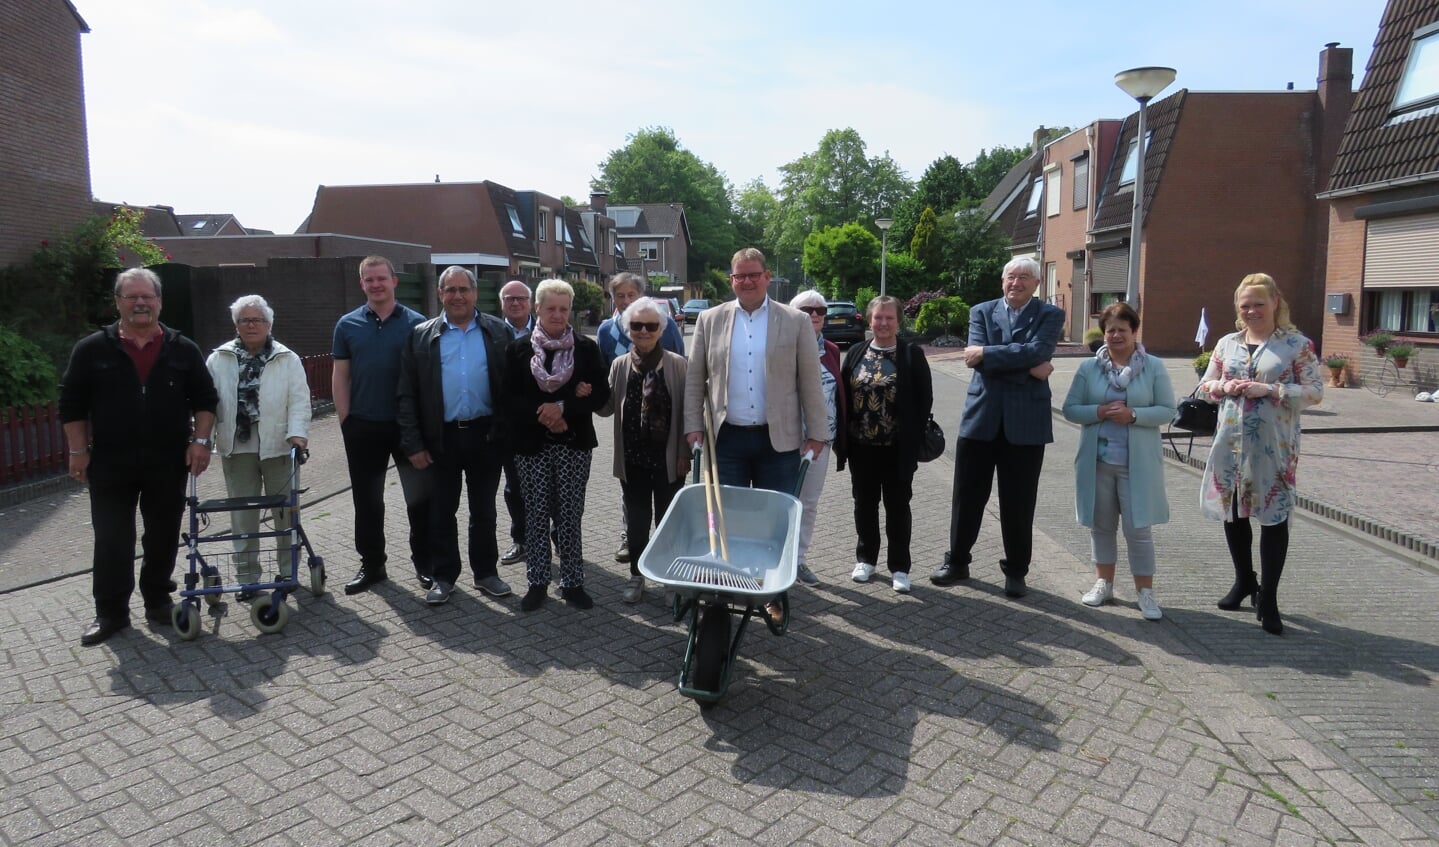 Officiële opening door wethouder Patrick van der Velden, samen met de bewoners van het Schoutenpad en omliggende straten. 